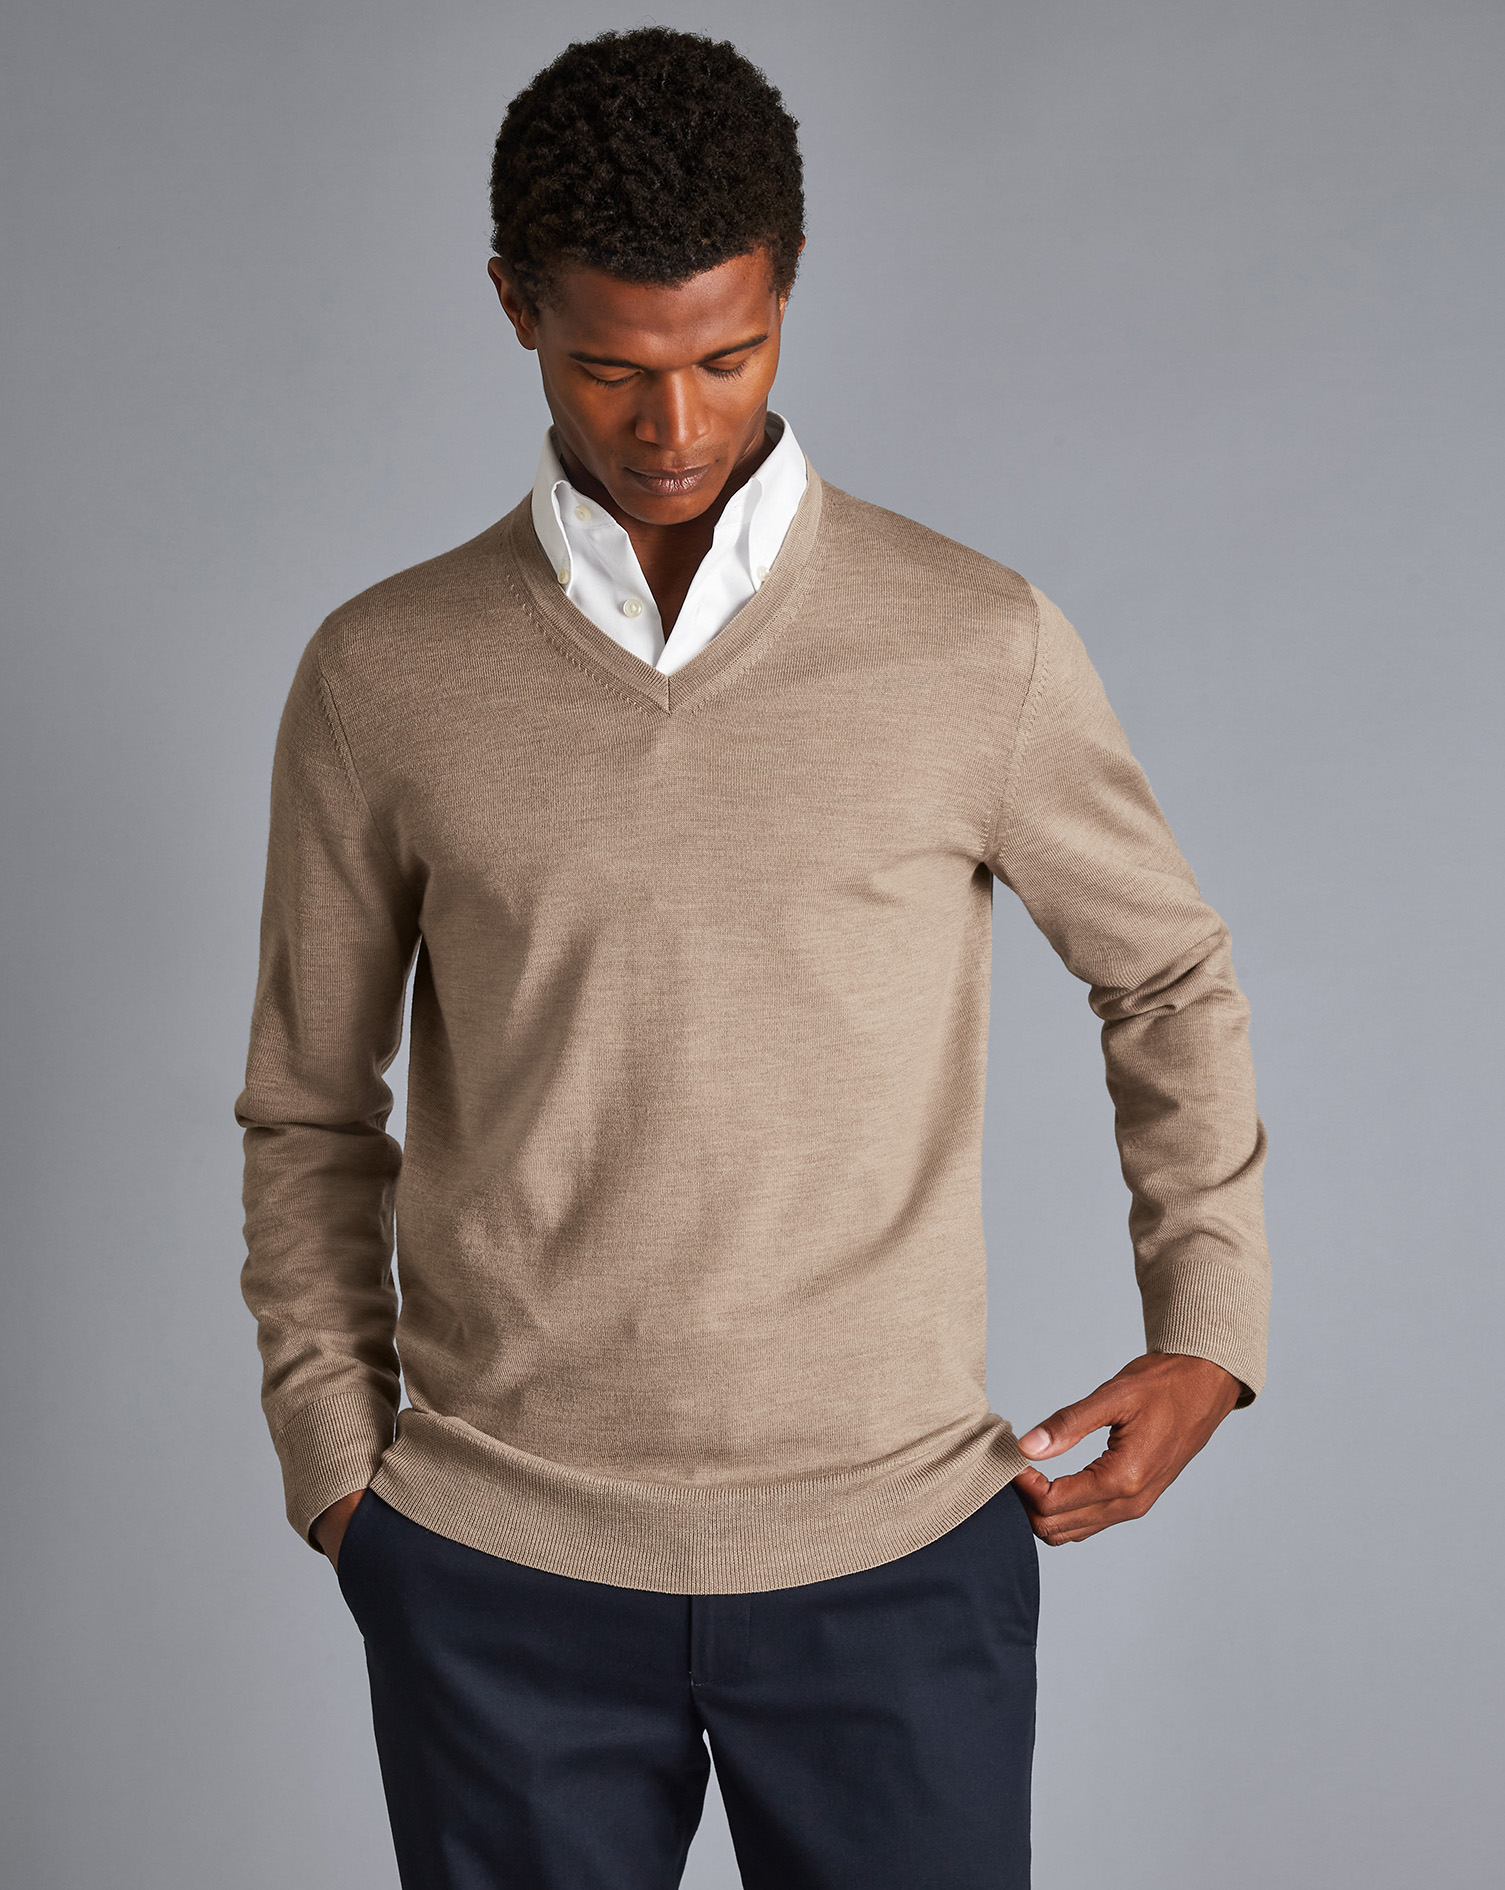 Men's Charles Tyrwhitt V-Neck Sweater - Oatmeal Brown Size Small Merino
